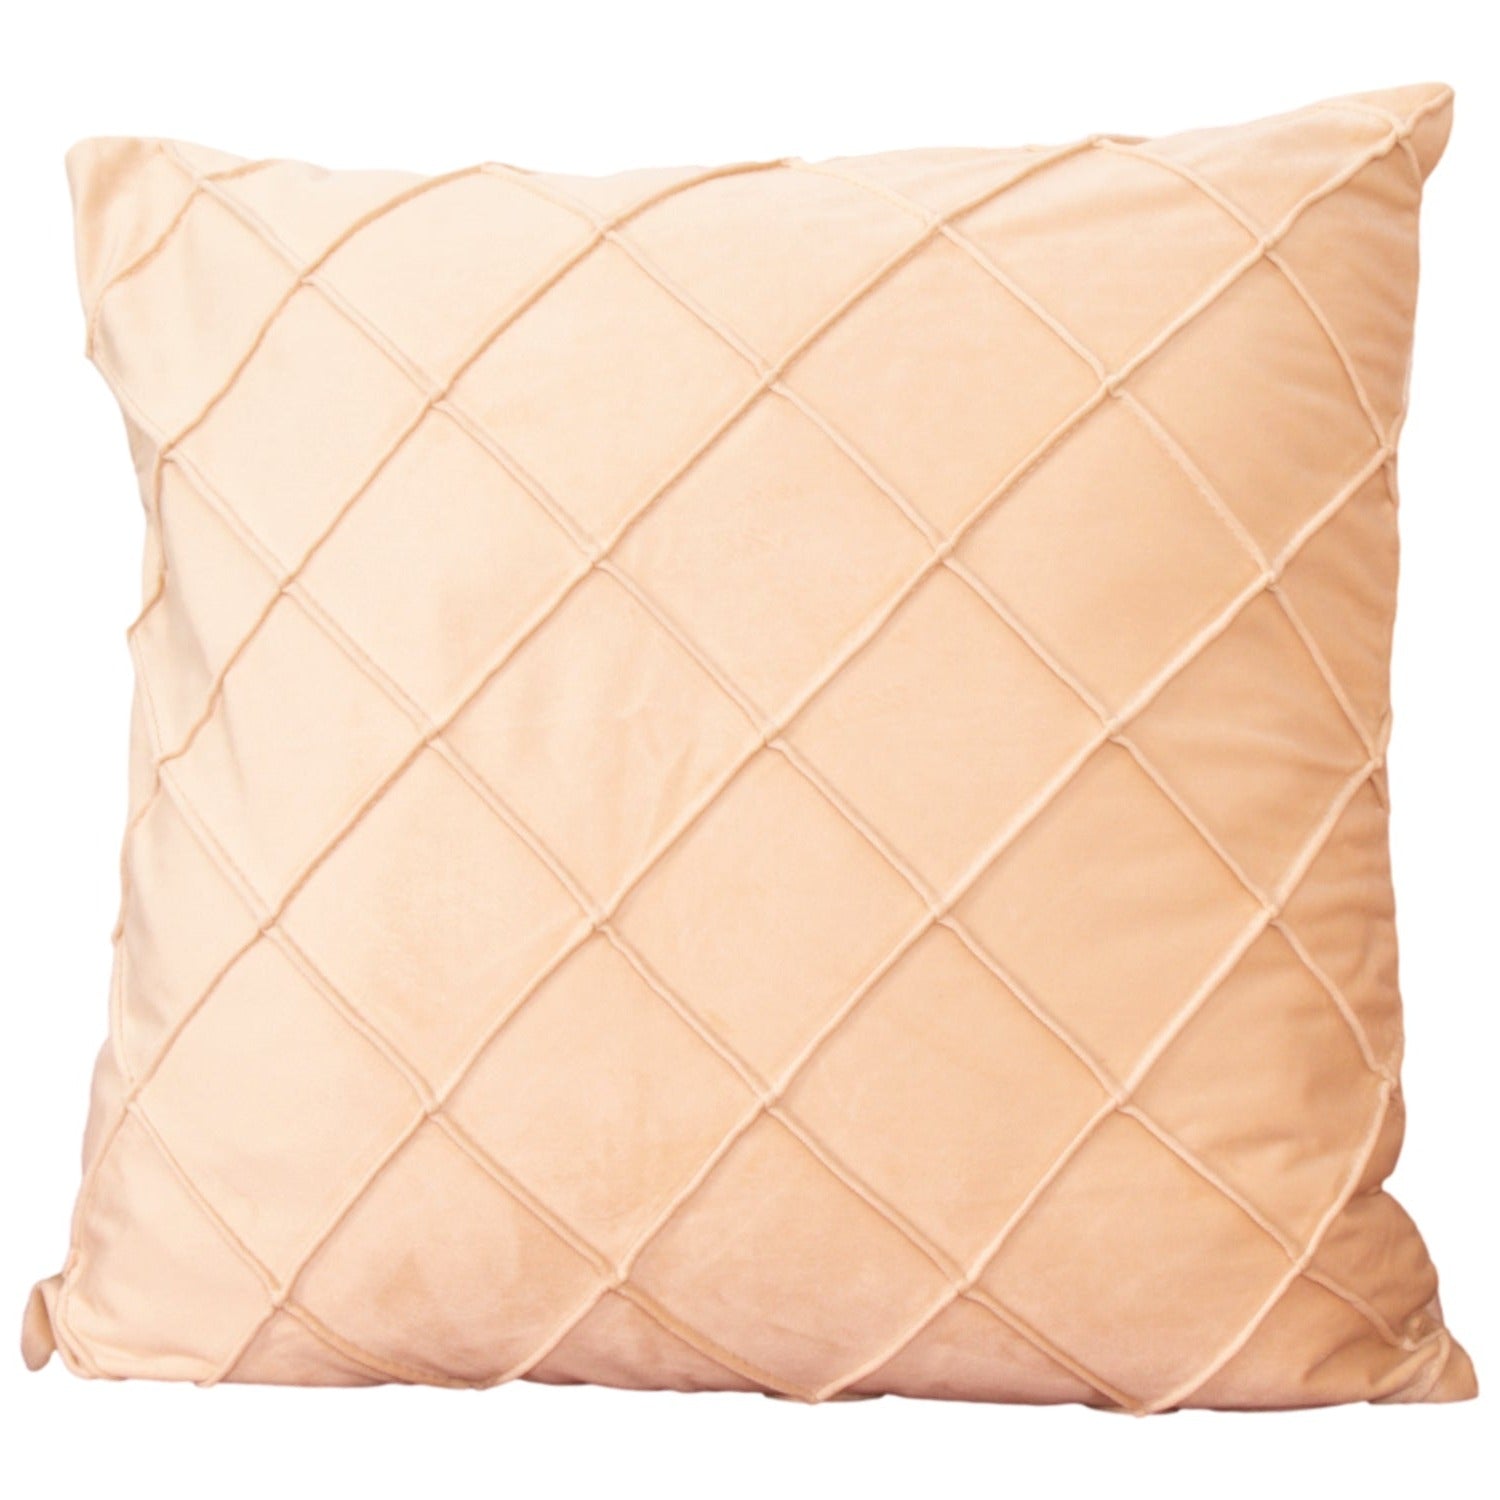 Diamond beige velvet cushion cover by Native